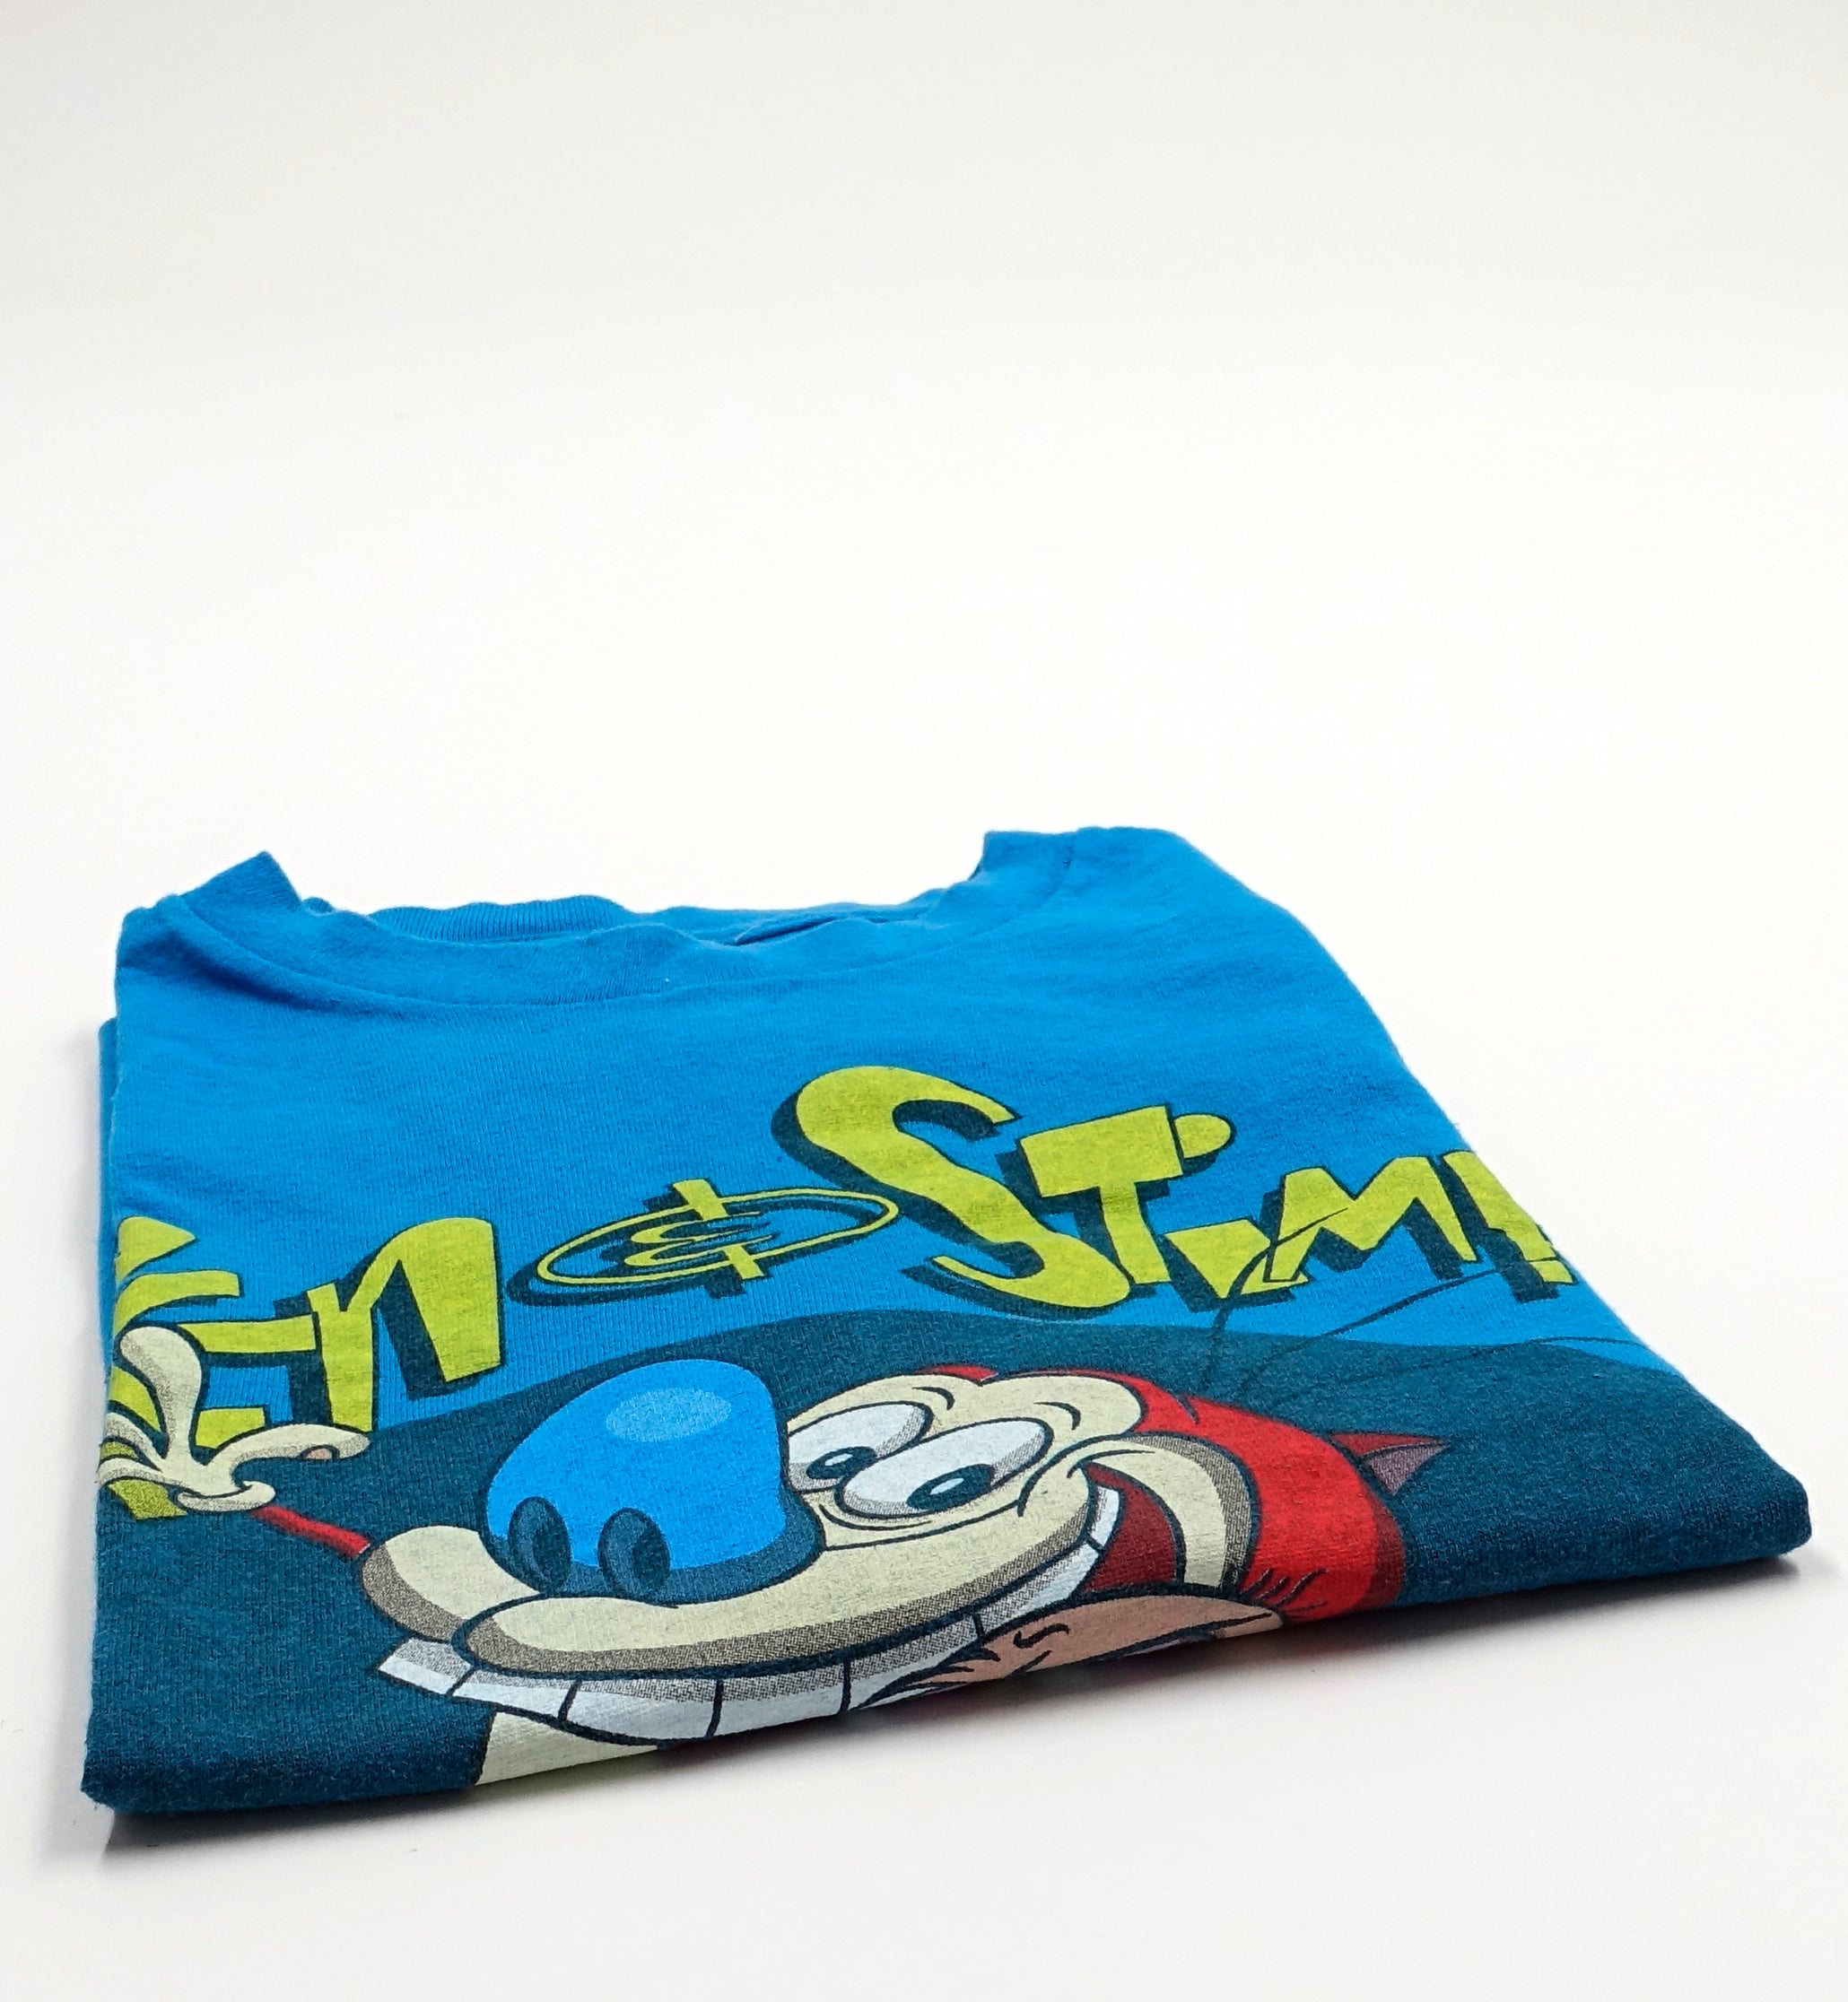 Ren & Stimpy - Spotlight ©2011 Shirt Size XL